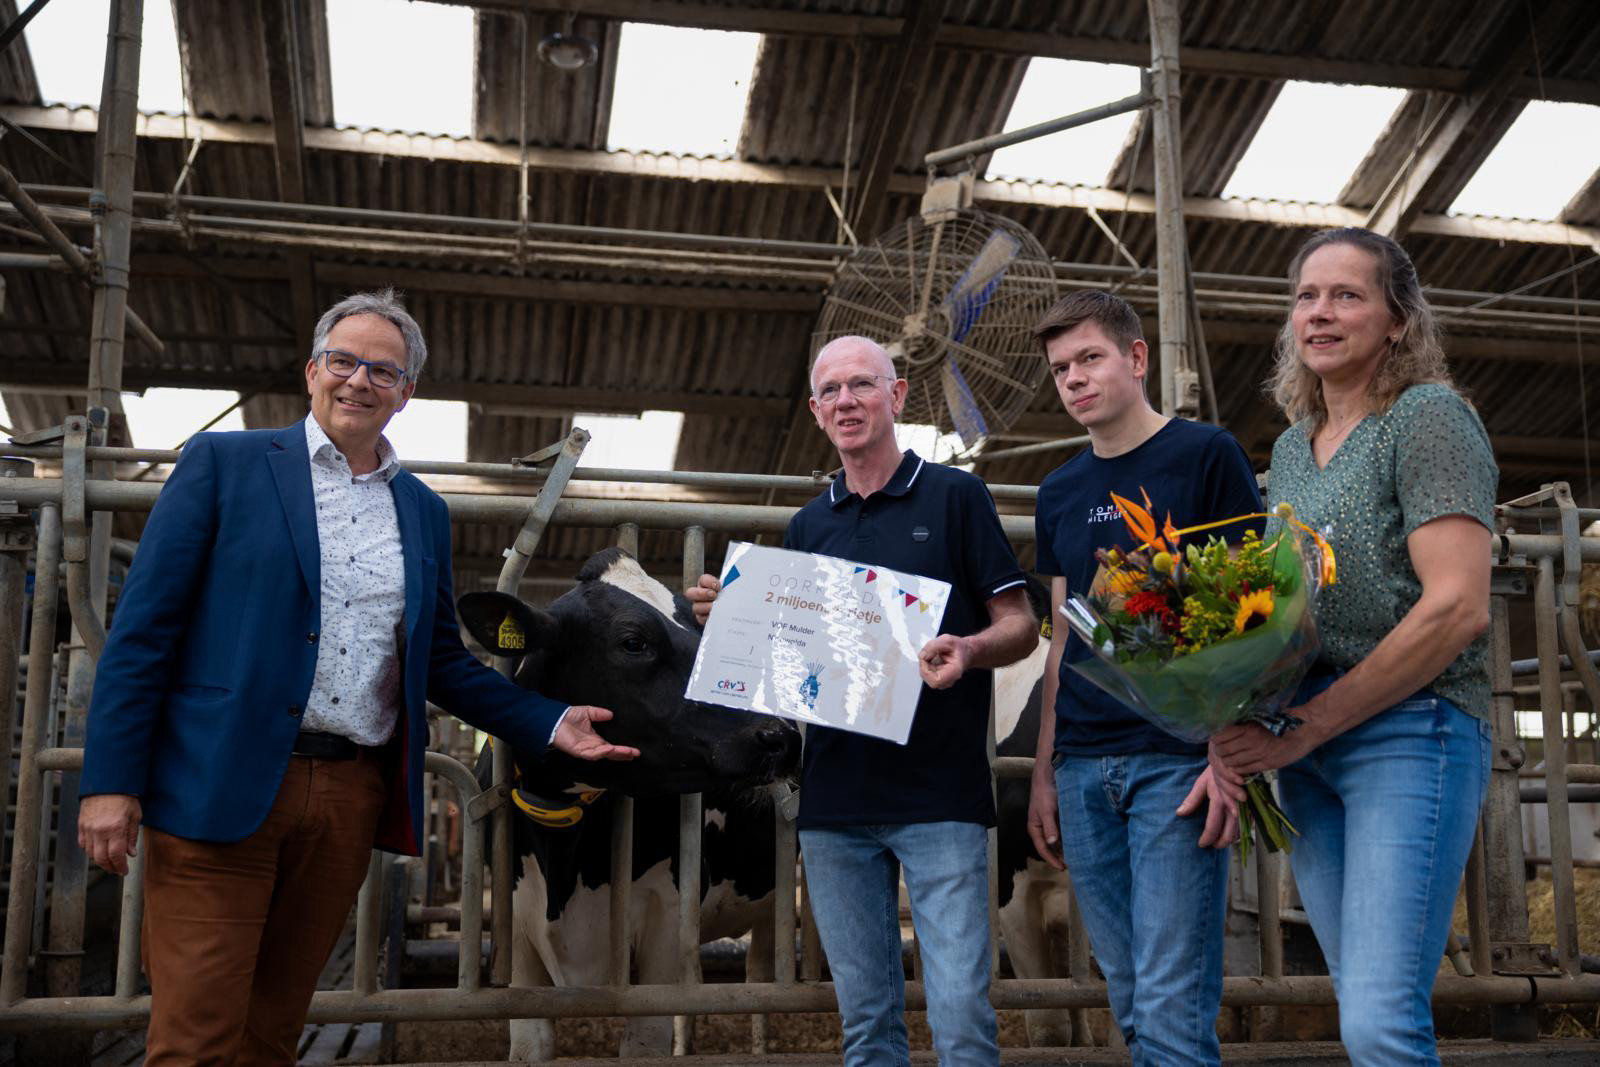 Lammert Veenhuizen, directeur Nederland – Vlaanderen bij CRV, was in Nieuwolda aanwezig om André, Thomas en Rikie Mulder te feliciteren en te bedanken voor hun vertrouwen in CRV.